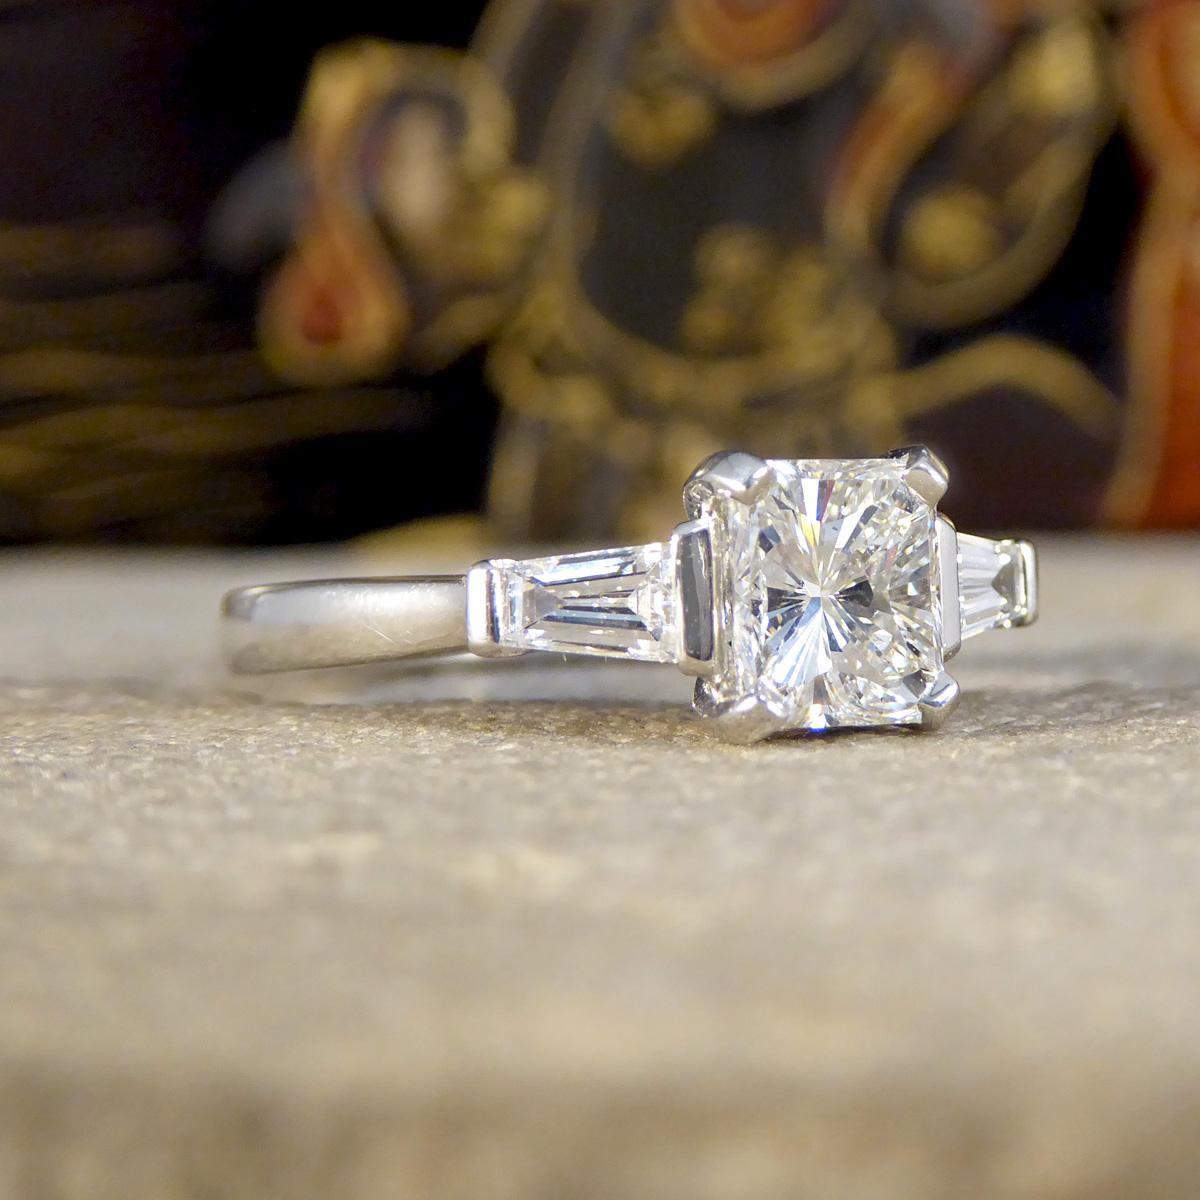 Dieser wunderschöne Diamantring im Radiant-Schliff, gefasst in feinstem Platin, ist der Inbegriff von Eleganz und Raffinesse. Sein Herzstück ist ein atemberaubender Diamant im Brillantschliff von 1.02 Karat, der dafür bekannt ist, dass er das Licht